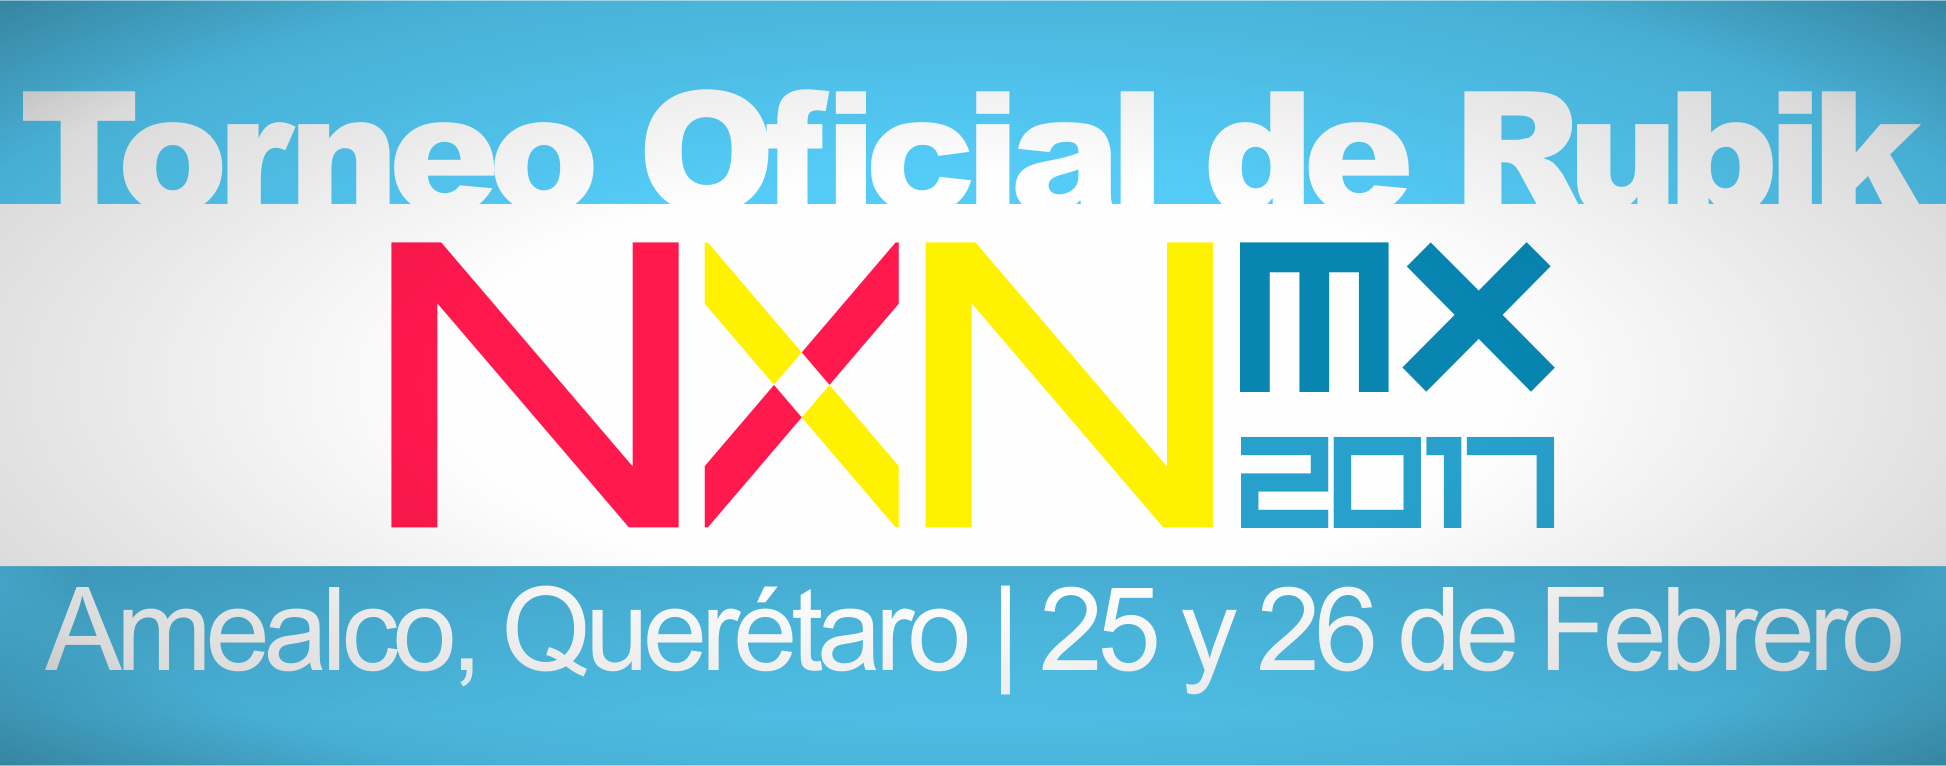 NxN Mx 2017